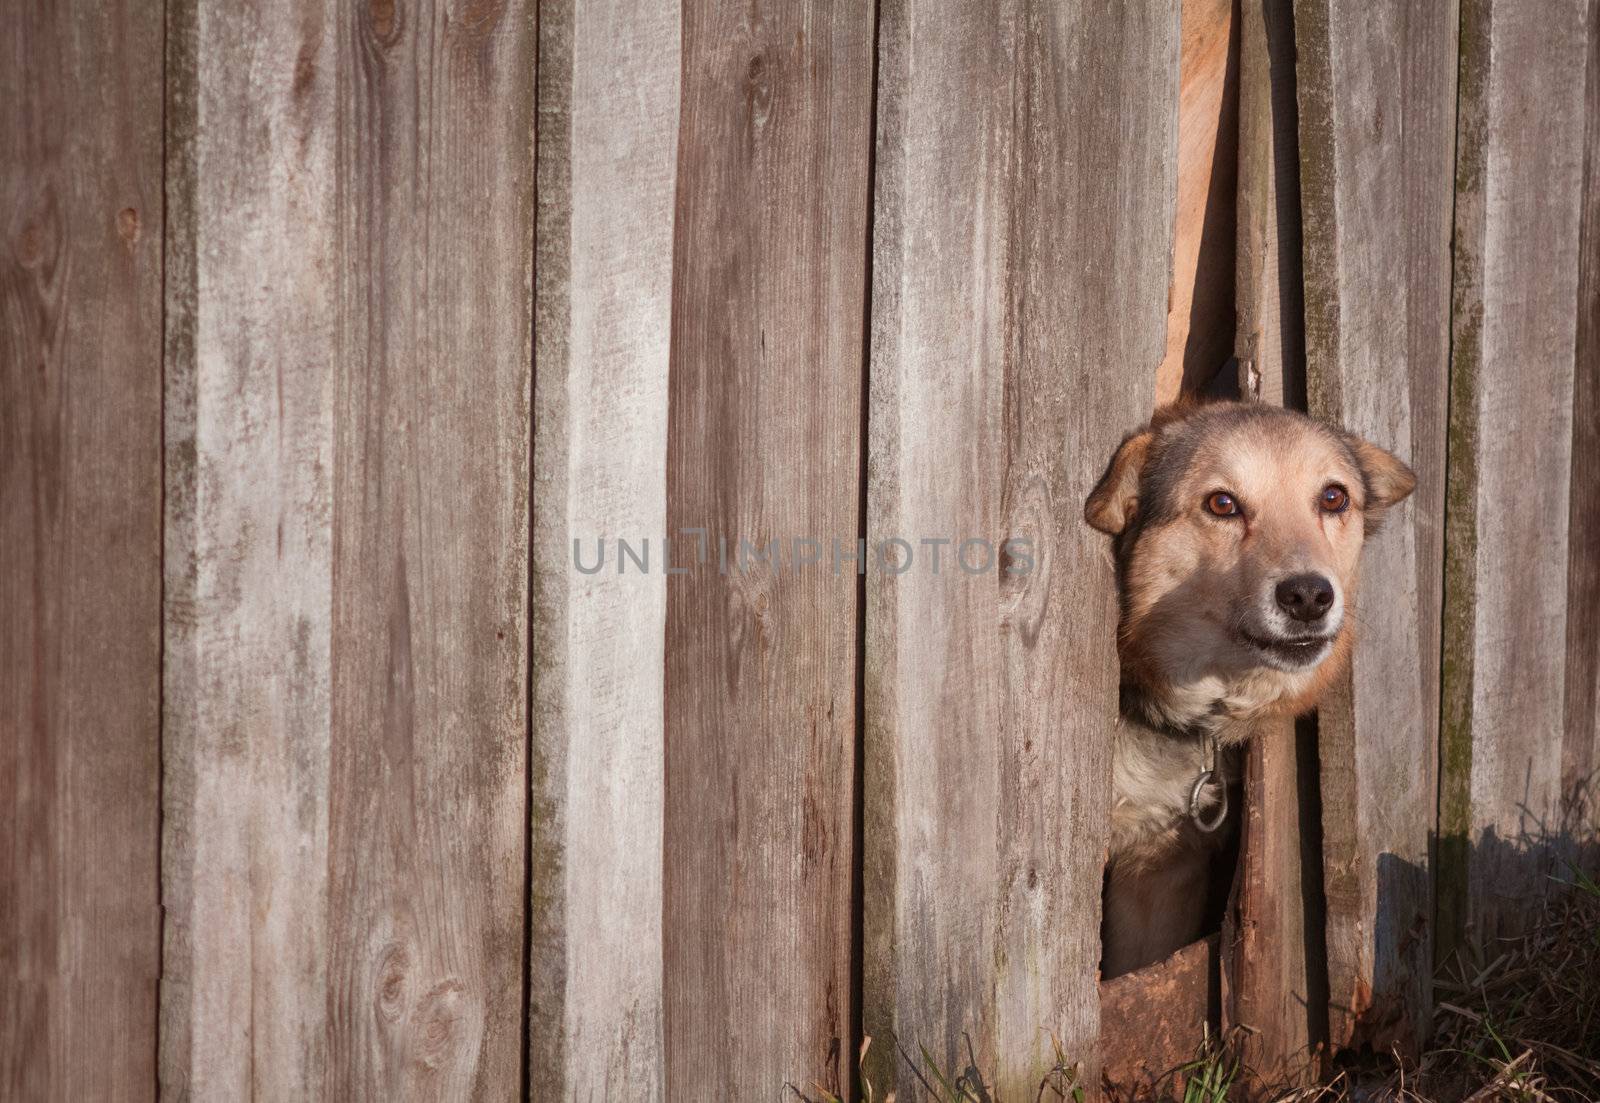 Dog Peeking Through Old Wood Fence